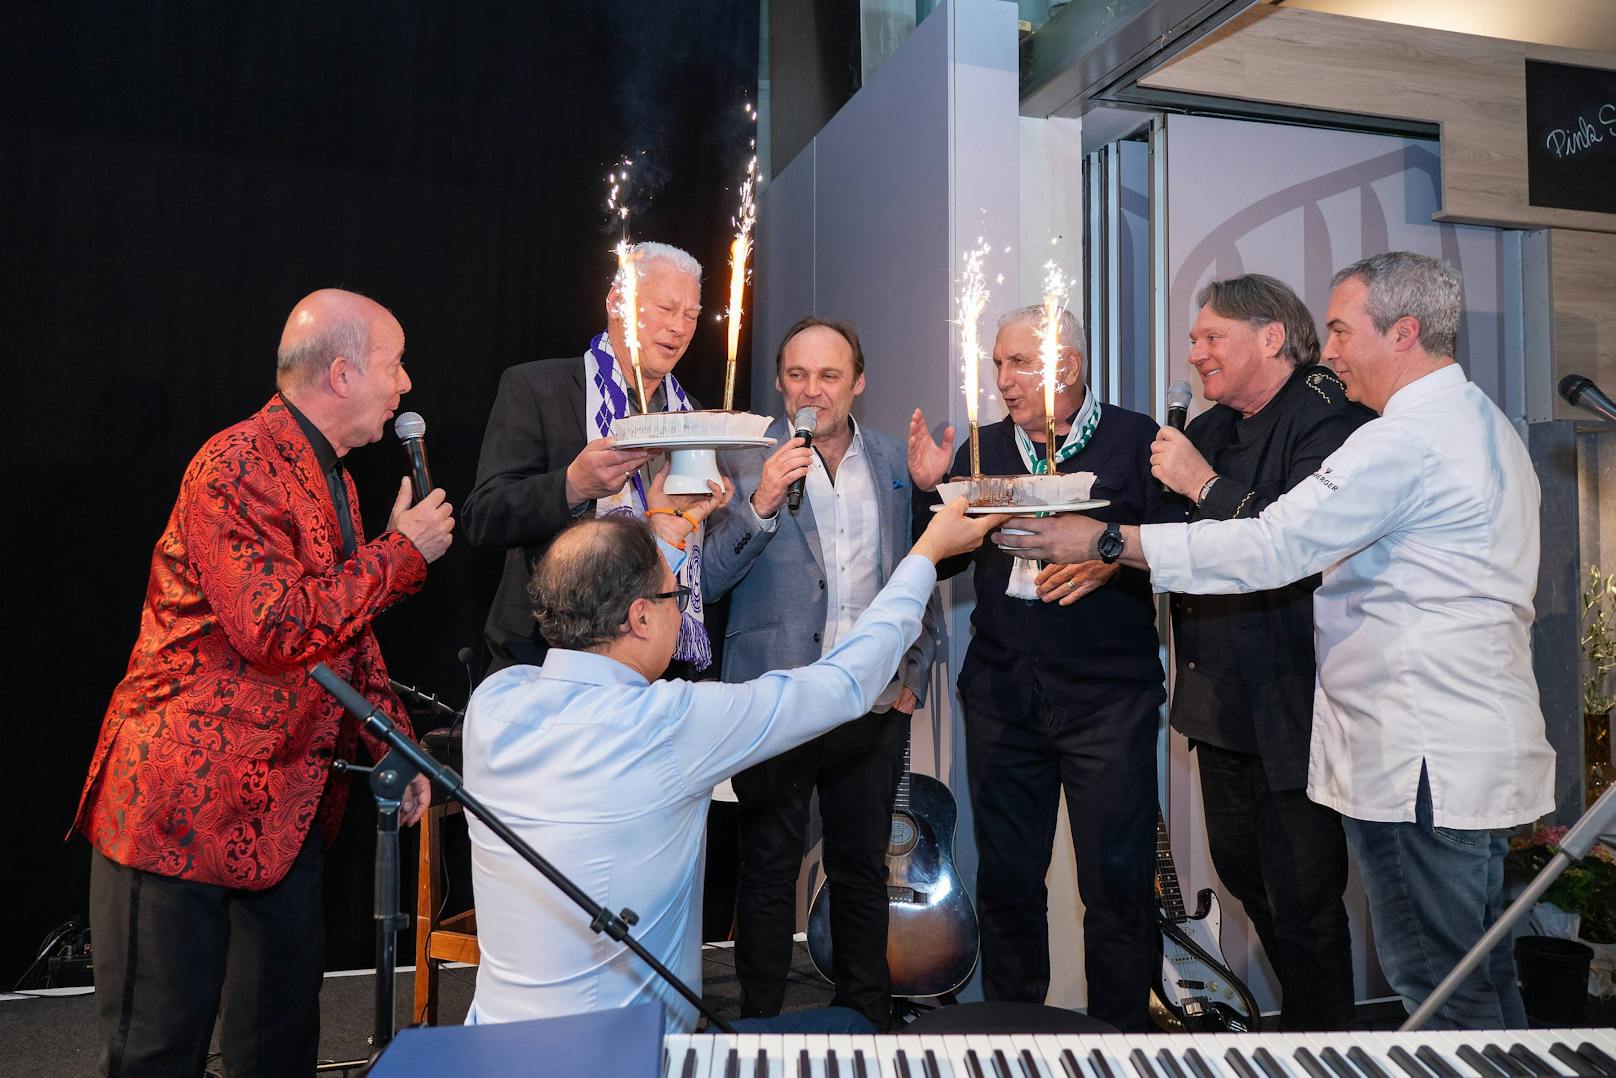 Toni Polster und Hans Krankl wurden nachträglich zu ihren Geburtstagen noch einmal gefeiert